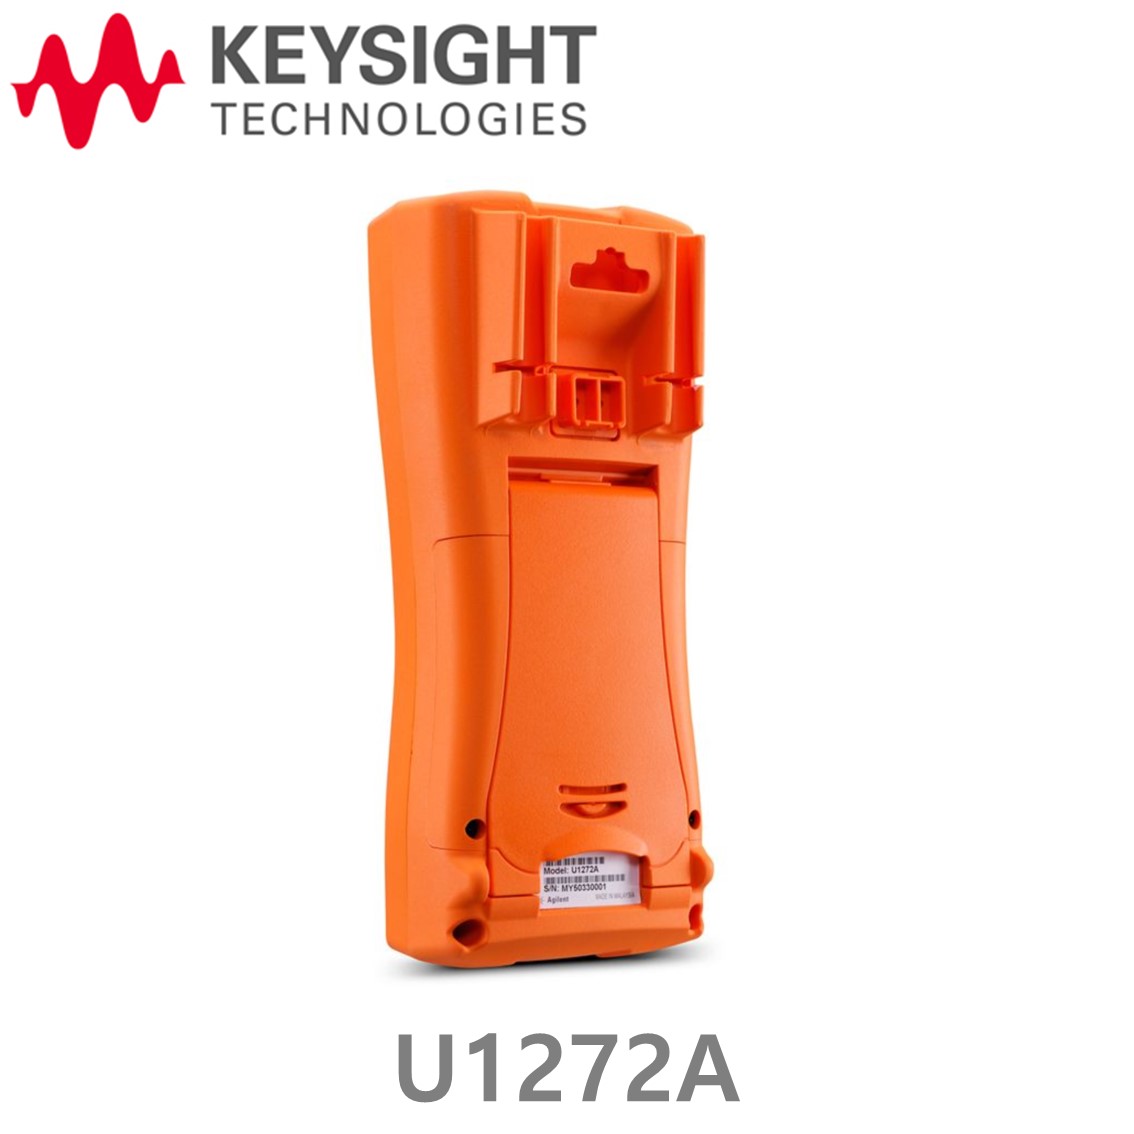 [ KEYSIGHT U1272A ] 키사이트 4.5디지트 핸드형 디지털 멀티미터 ( 방수,방진 IP54 )